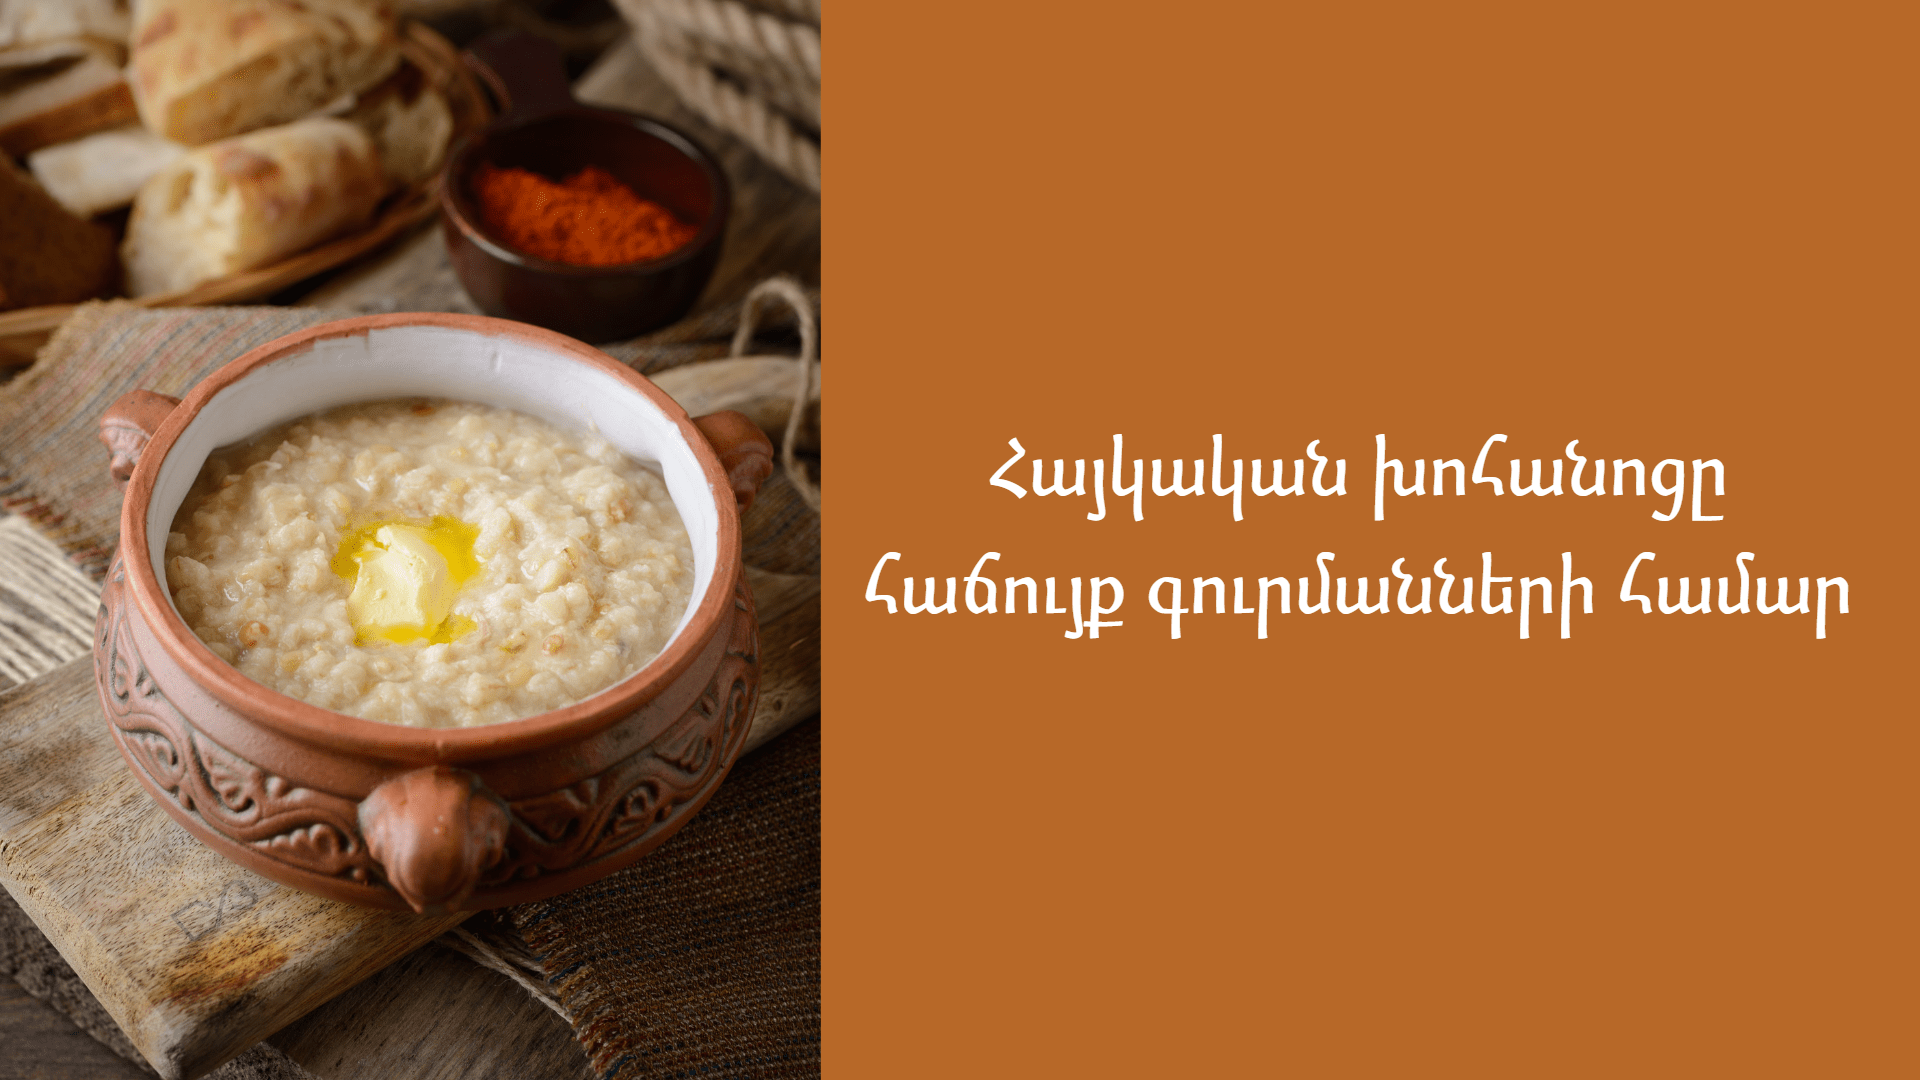 հայկական խոհանոց